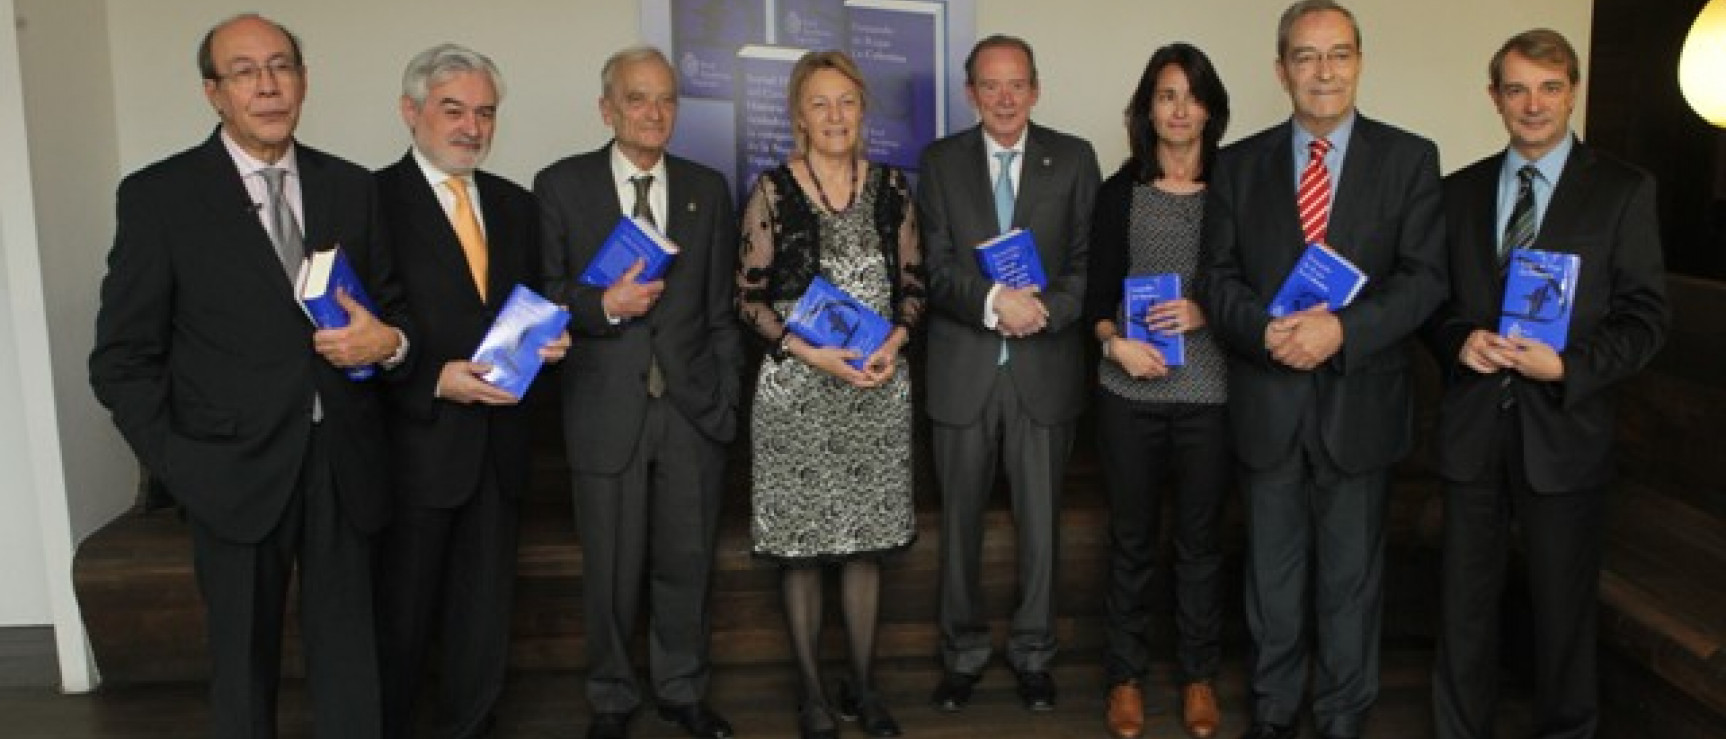 Presentación en CaixaForum cuatro nuevos títulos de la Biblioteca Clásica de la Real Academia Española, abril 2012